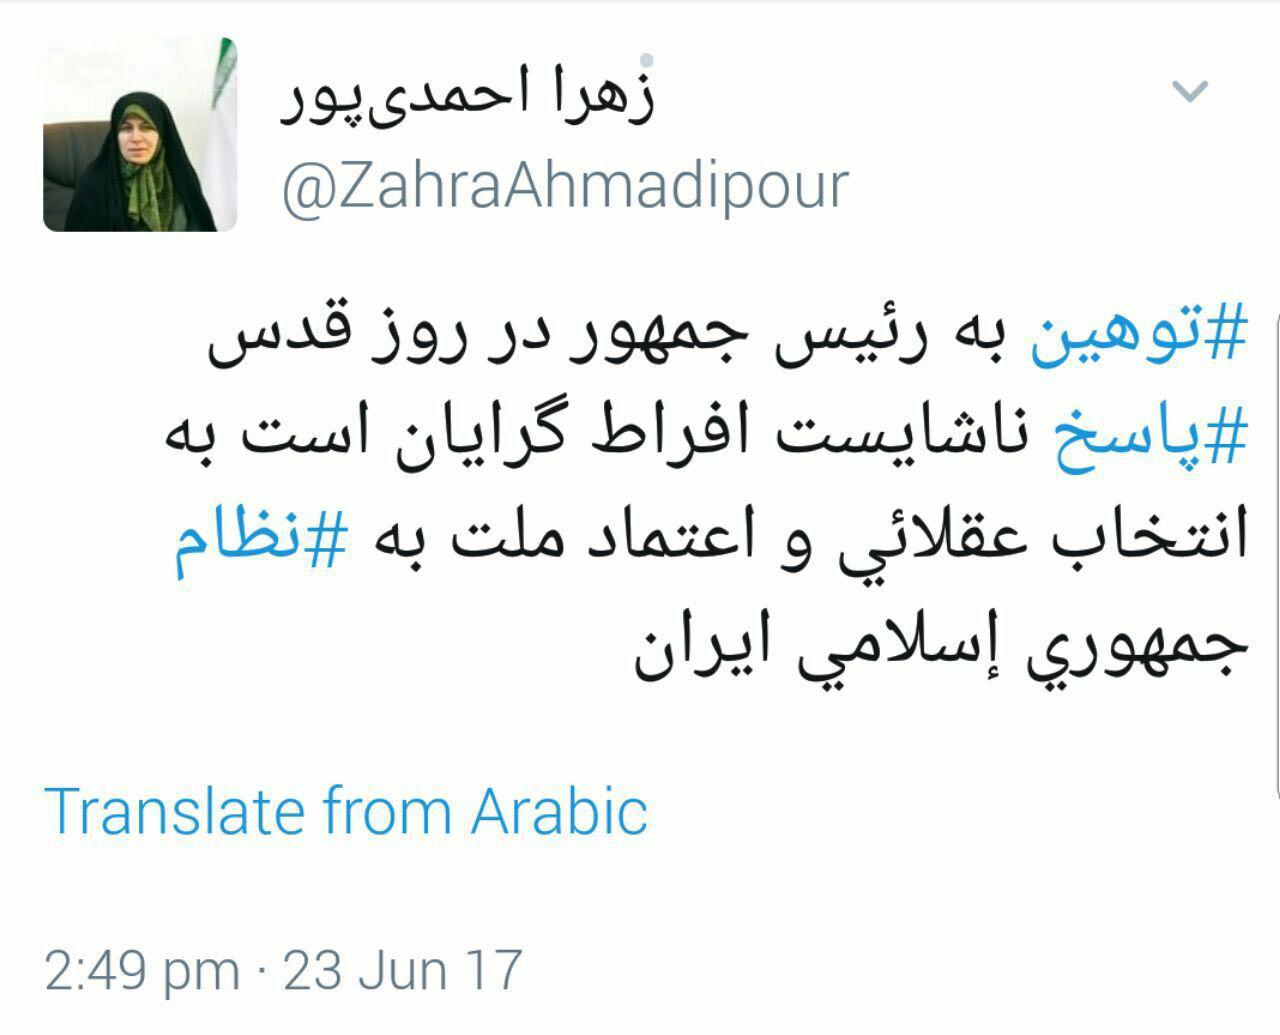 واکنش زهرا احمدی پور معاون رئیس جمهور به توهین به دكتر روحانی در حاشیه مراسم روز قدس